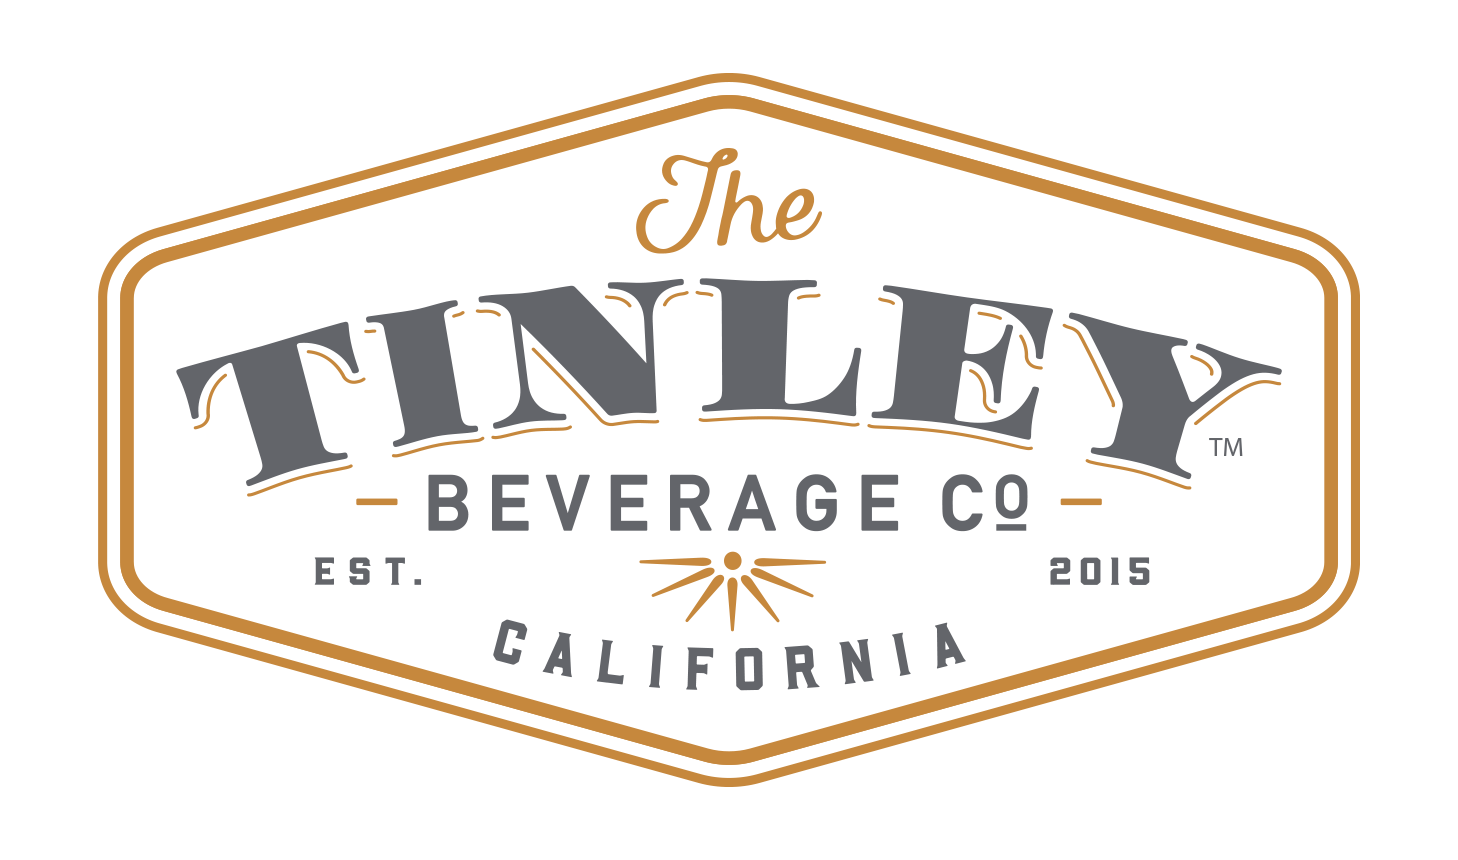 Tinley Bev Co logo_light.png